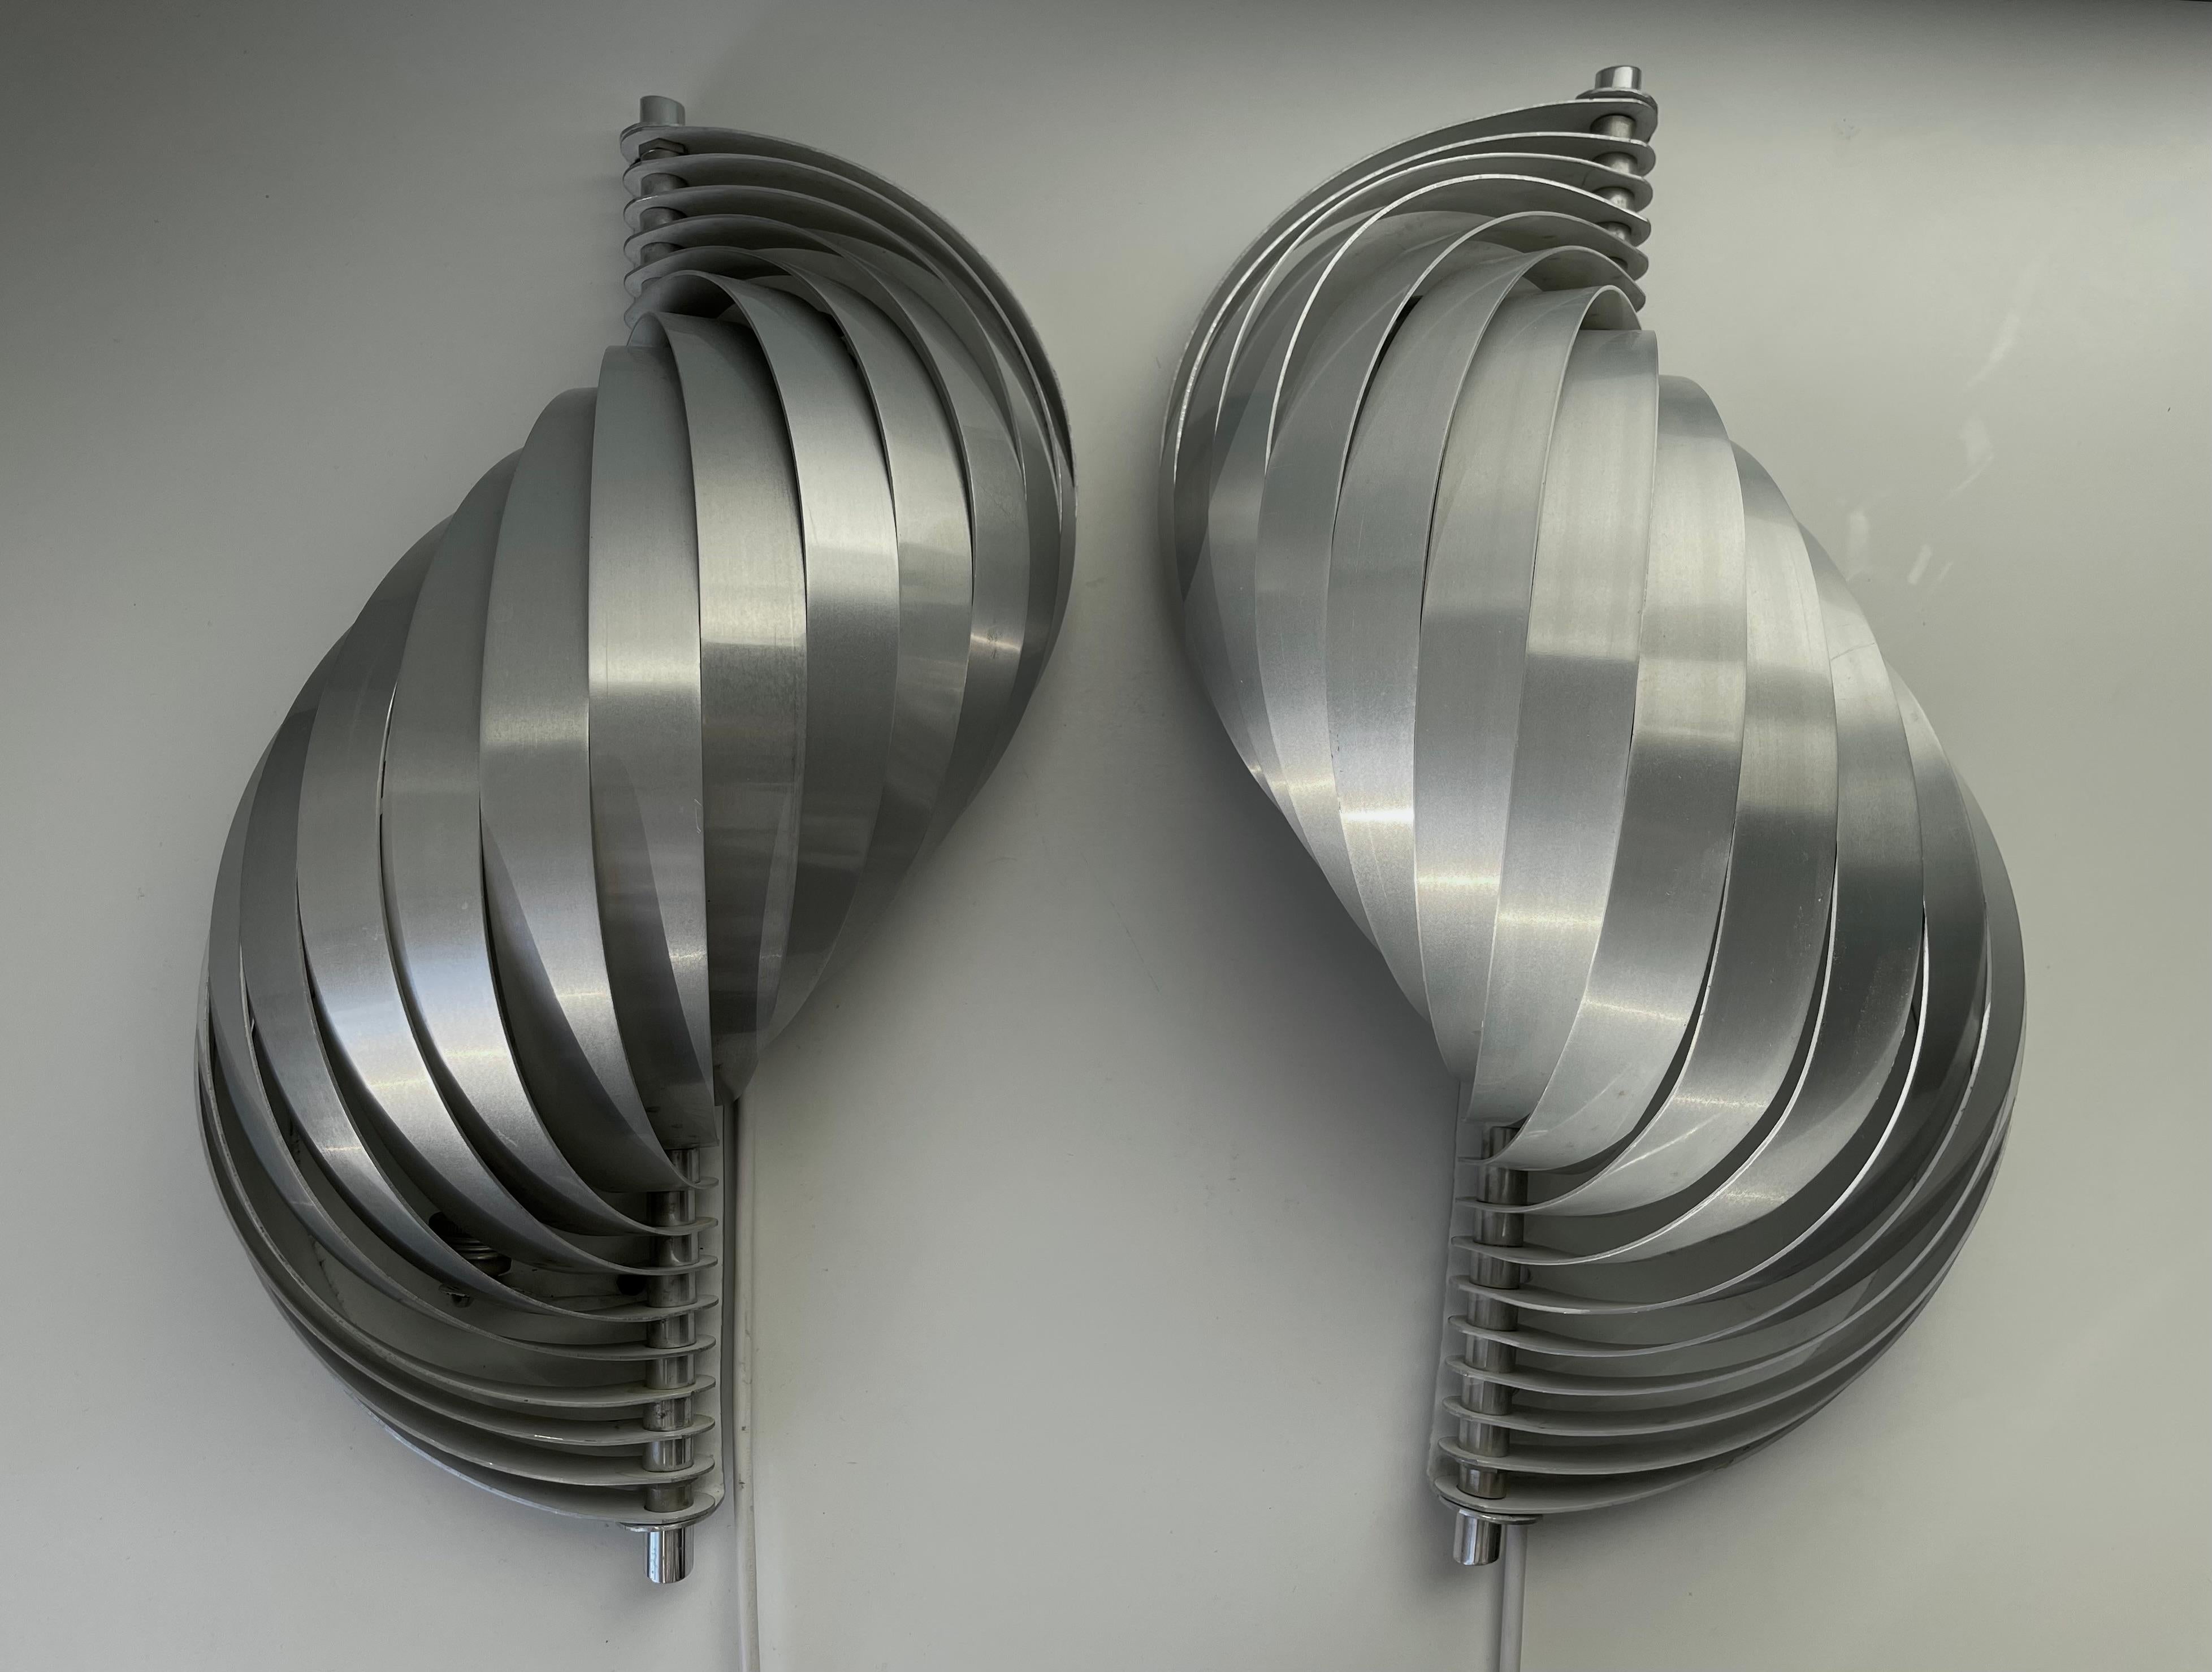 Atemberaubendes Paar glänzender, schalenförmiger, futuristischer Wandleuchten aus Aluminium des französischen Designers Henri Mathieu aus den frühen 1970er Jahren. Gebürstete, sanft gebogene silberfarbene Aluminiumlamellen bilden dieses Set